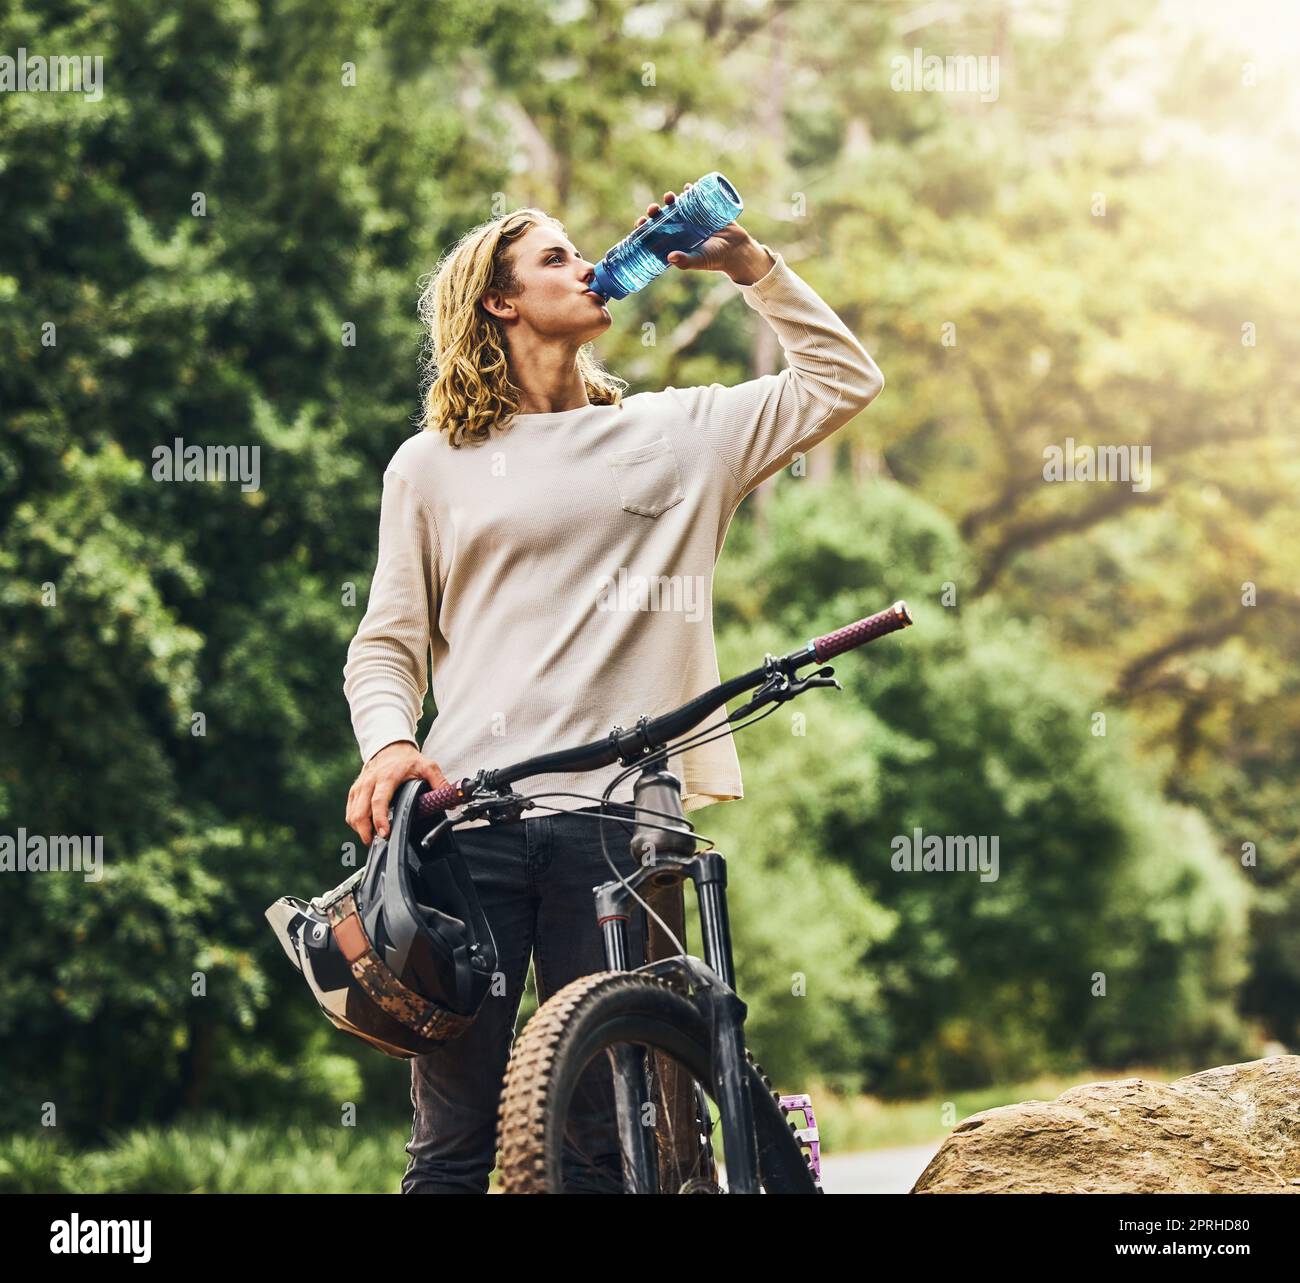 Bicicleta de montaña, agua potable y hombre de Berlín en la naturaleza  después de un entrenamiento de deportes de aventura. Deportes, ejercicio y  paseo de fitness de una persona sana ath Fotografía